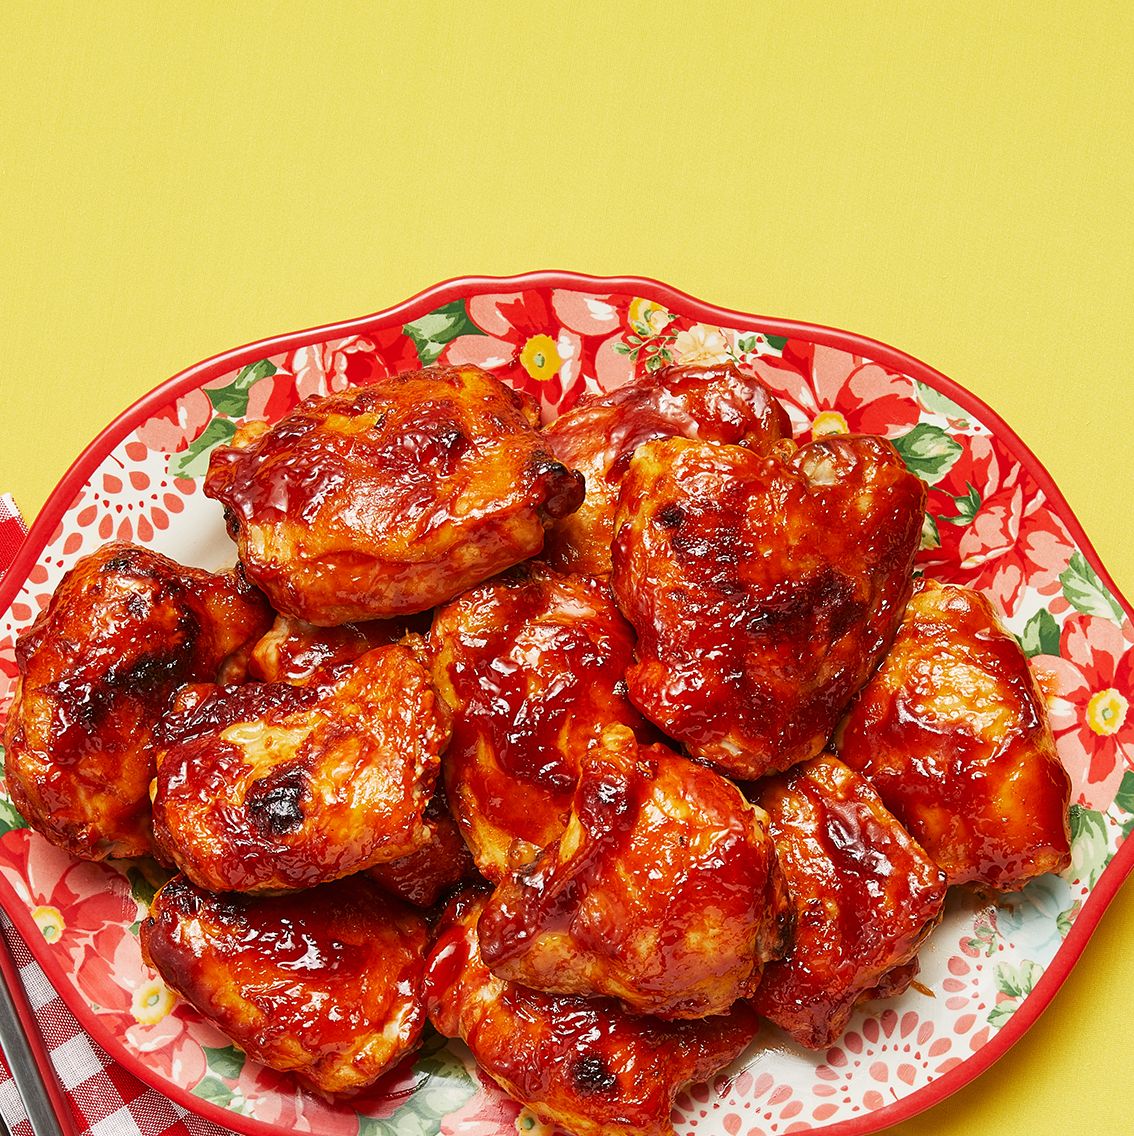 12 Different Ways To Cook Chicken